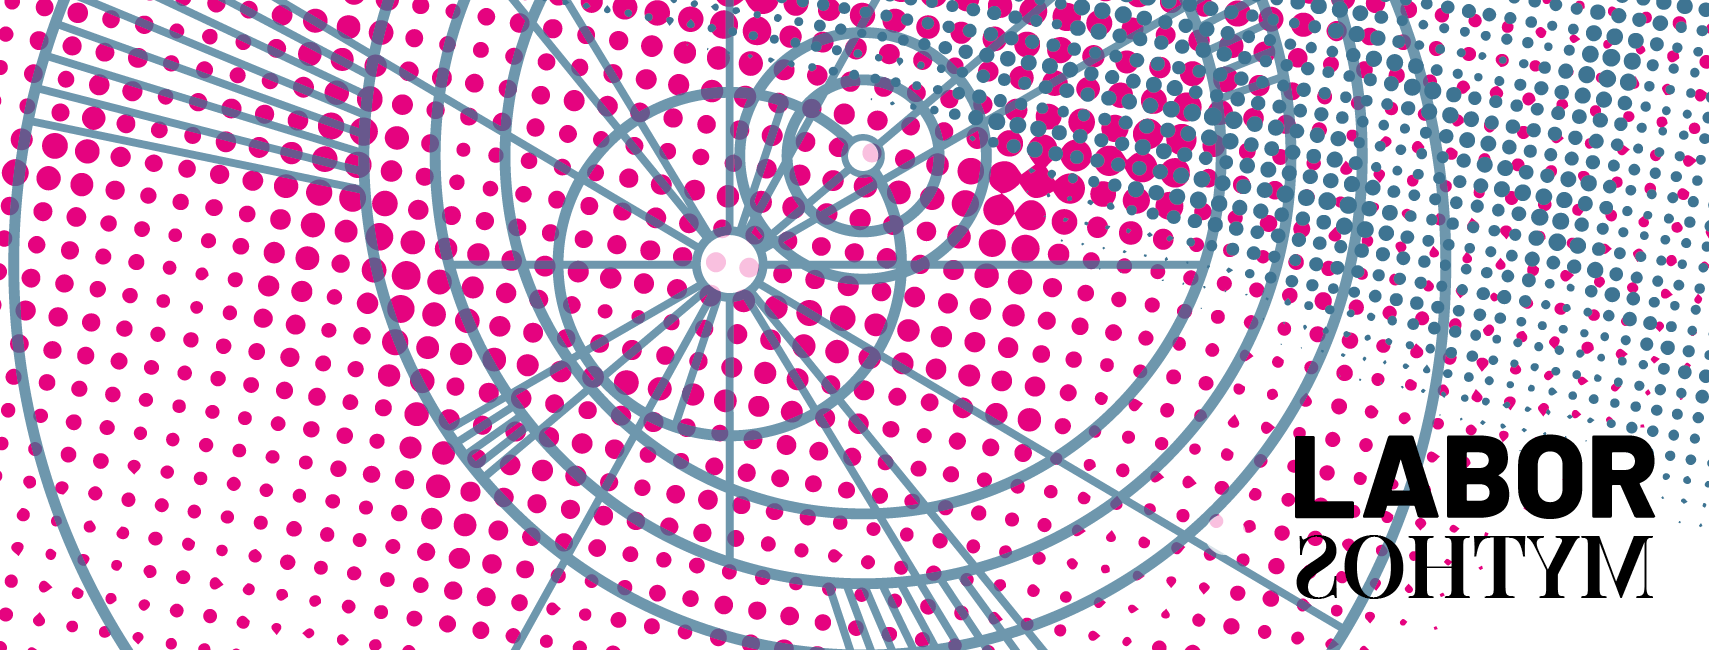 Schematische Darstellung eines Sonnensystems mit blauen Kreisen im Hintergrund eine Fläche mit unterschiedliche großen, gefüllten pinken Kreisen.